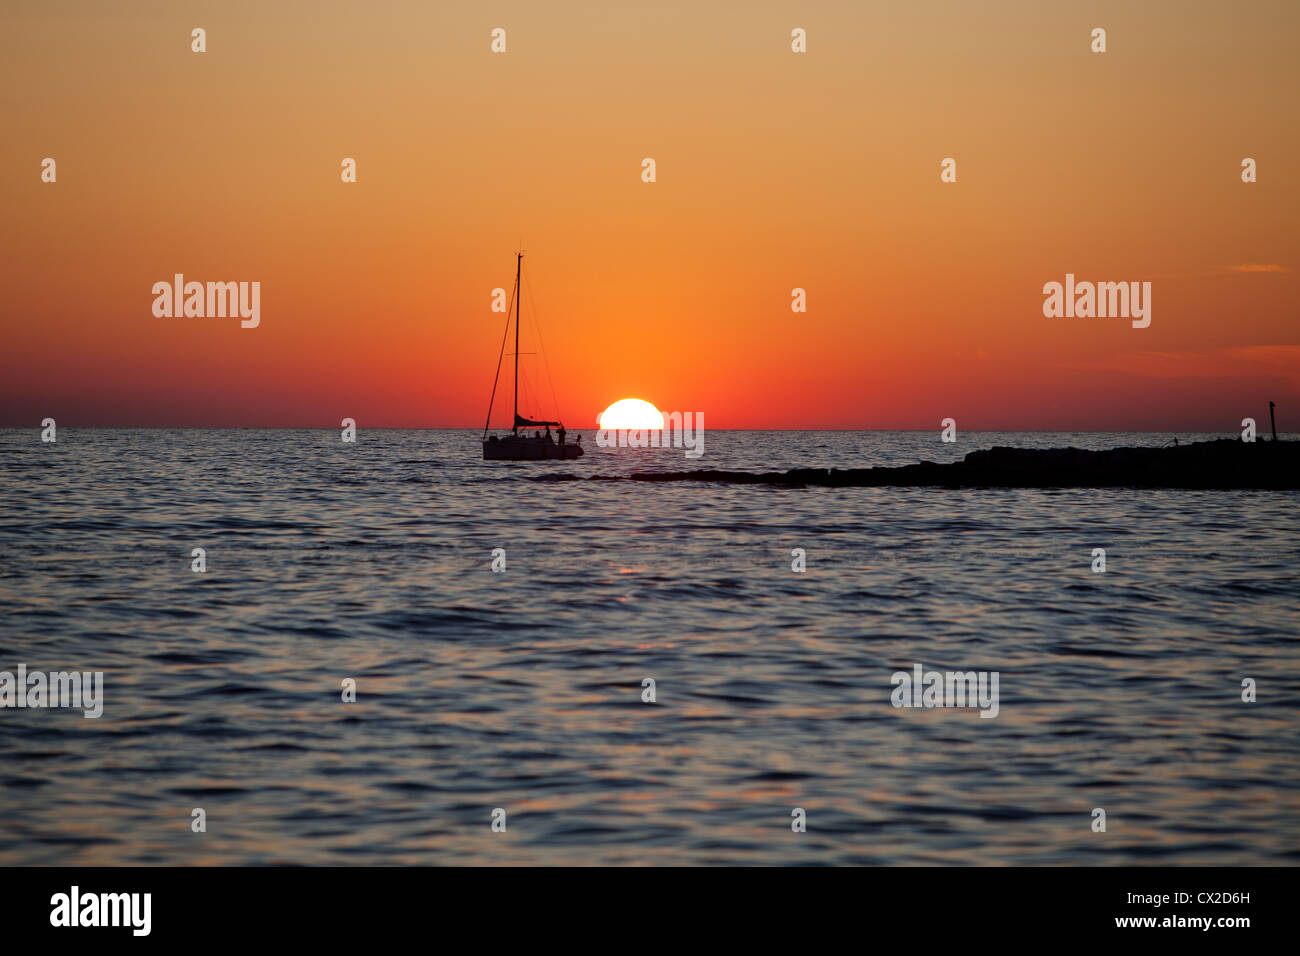 Europe, Croatia, Porec - Segelschiff Sonnenuntergang, sailing boat at sunset Schiff Schiffe Adria Meer Europa Europe Stock Photo